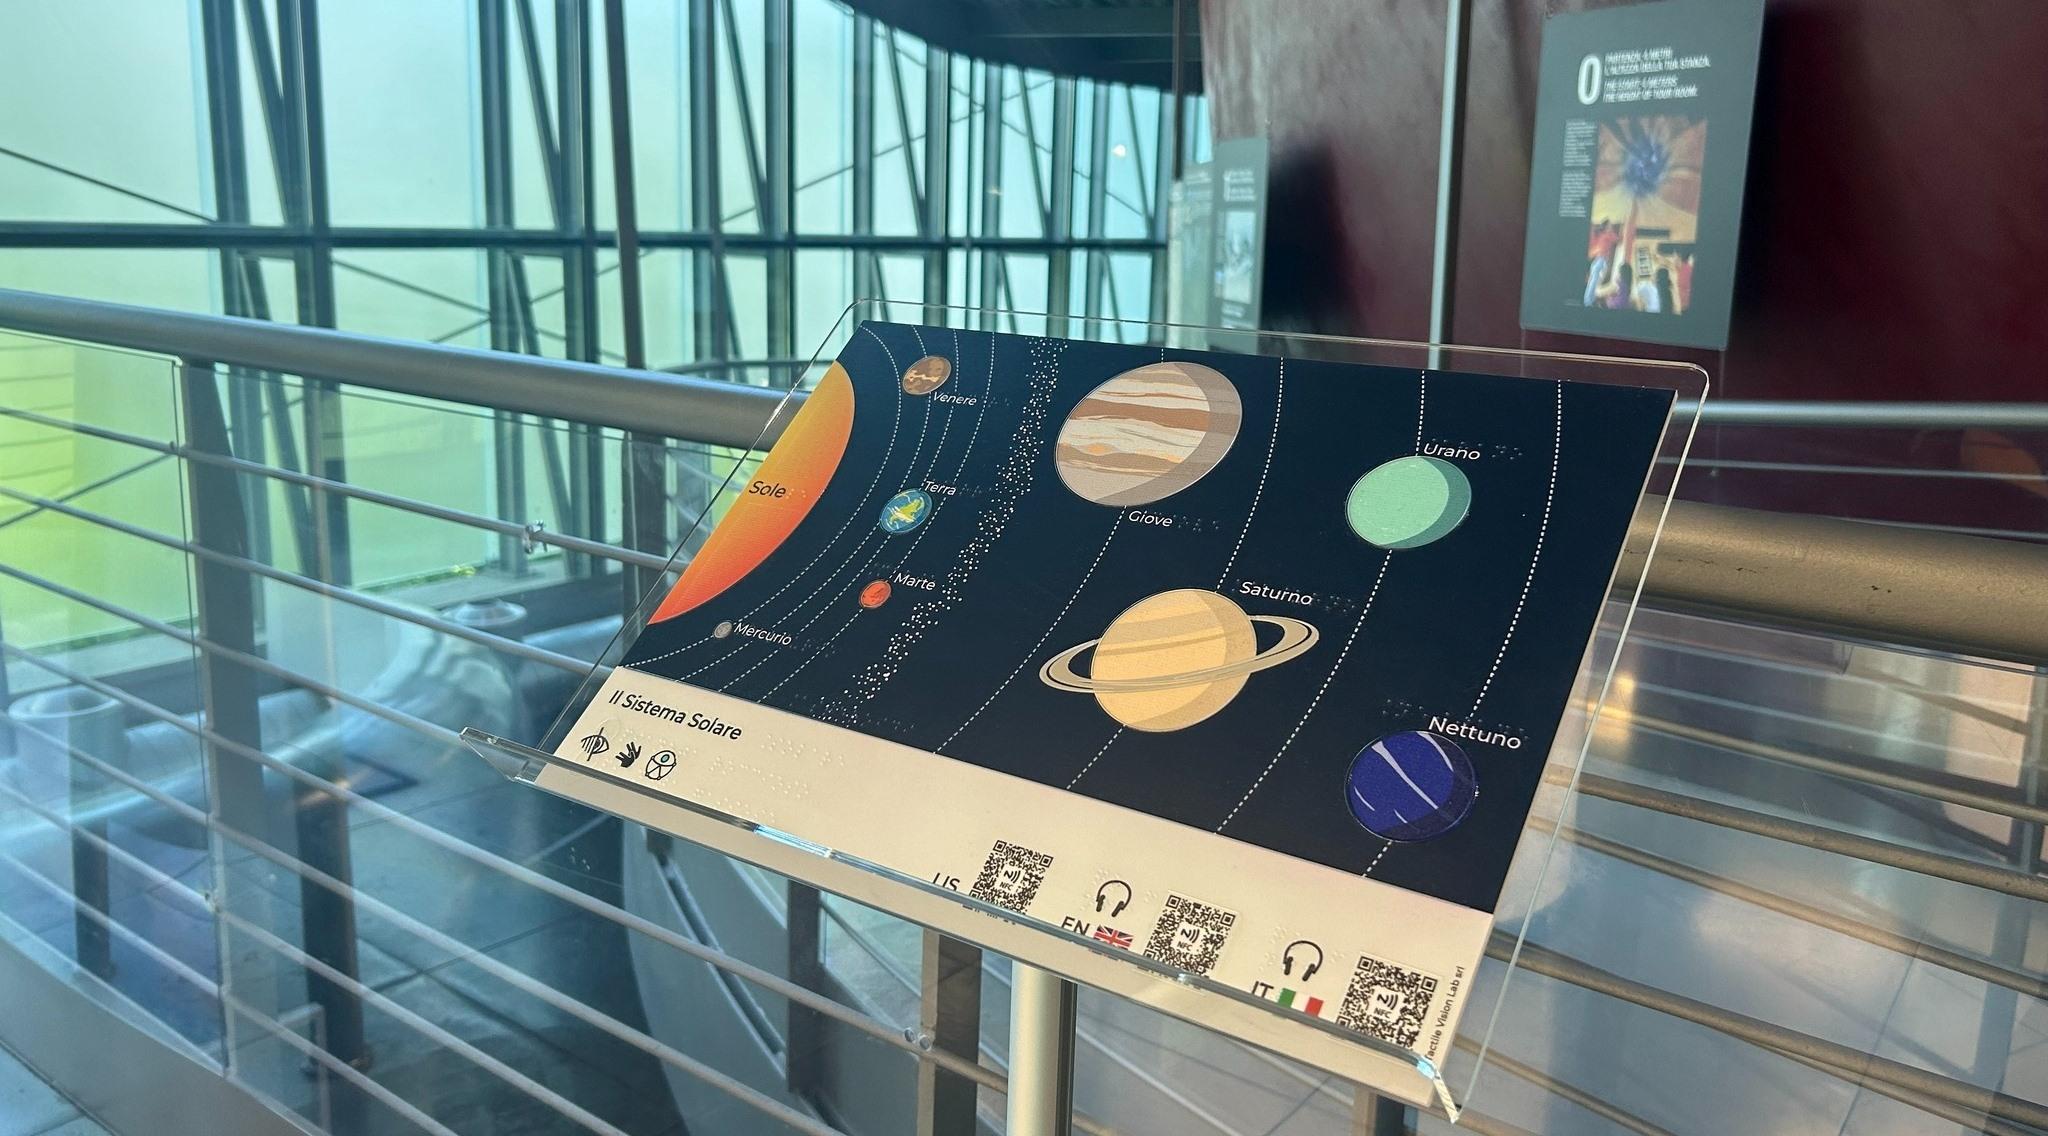 Una tavola visivo-tattile, presso il Planetario di Torino, riproduce il sistema solare.